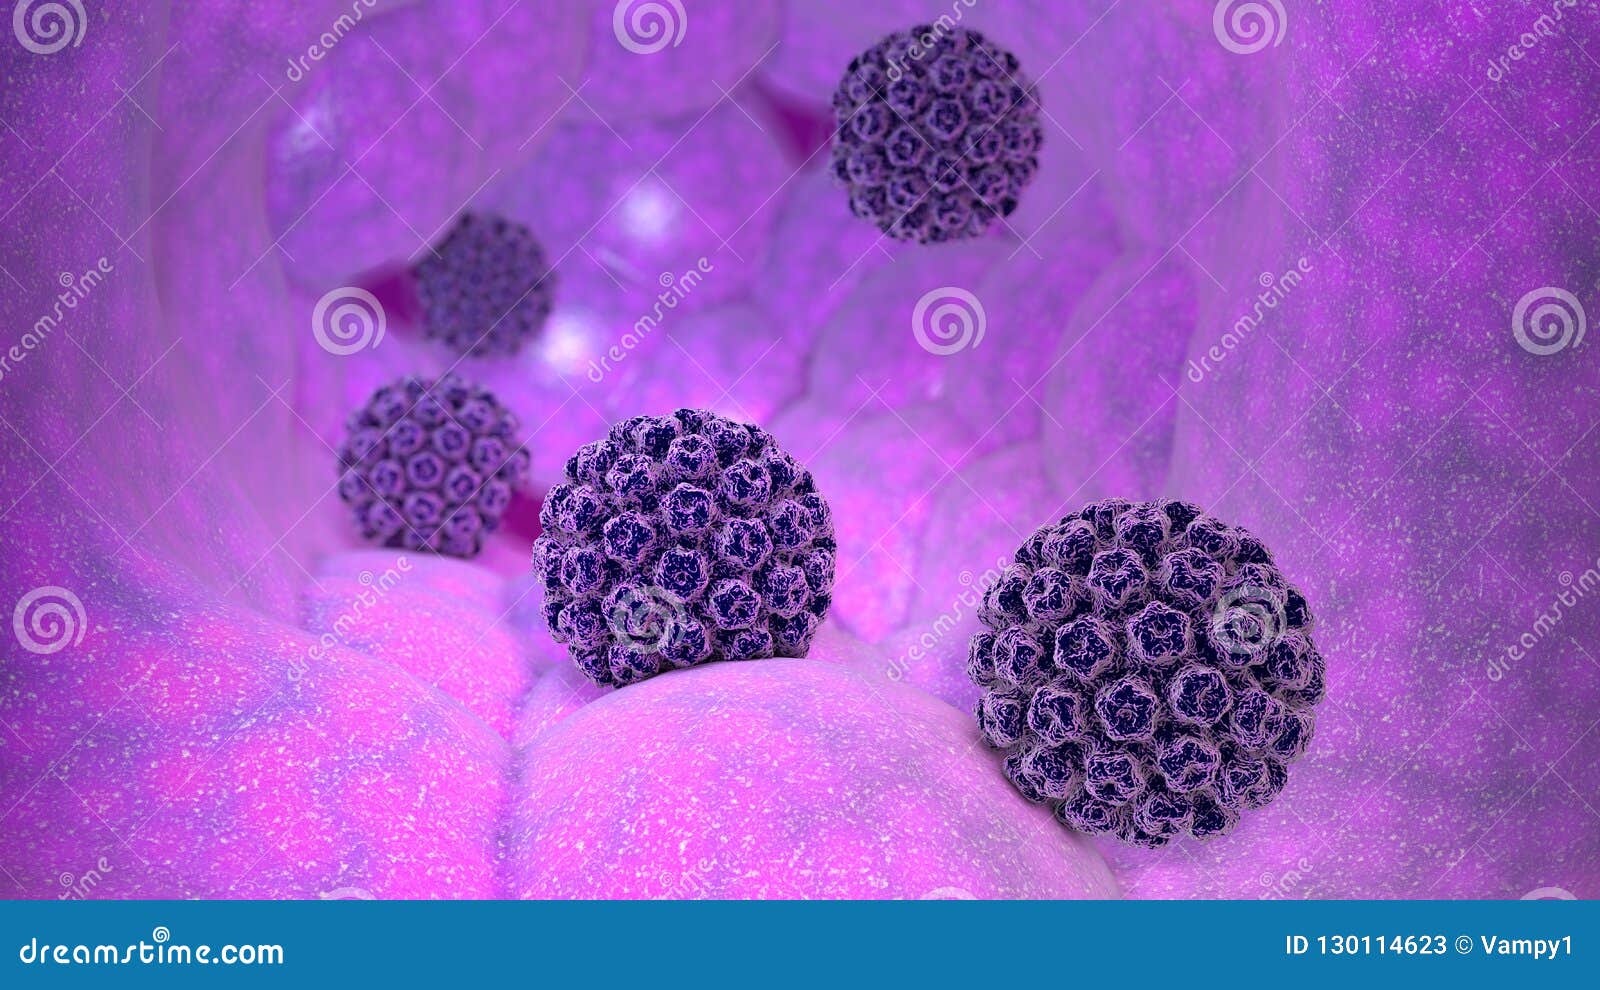 papillomavirus infection sexually transmitted platypelminthes viermi plat marini